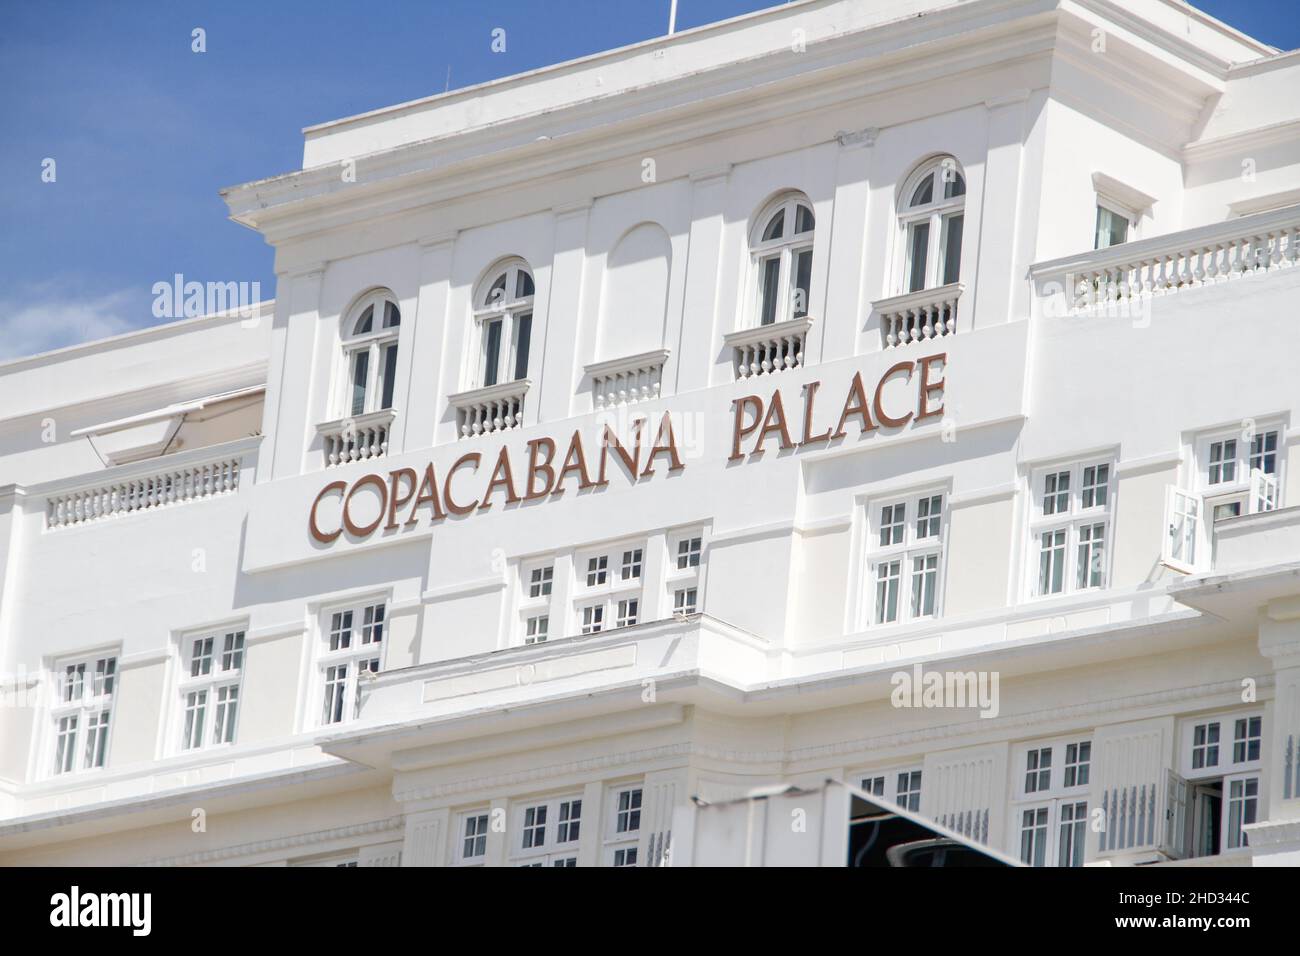 Copacabana Palace Hotel facade in Rio de Janeiro, Brazil -15 November 2021: Copacabana Palace Hotel facade in Copacabana District in Rio de Janeiro. Stock Photo